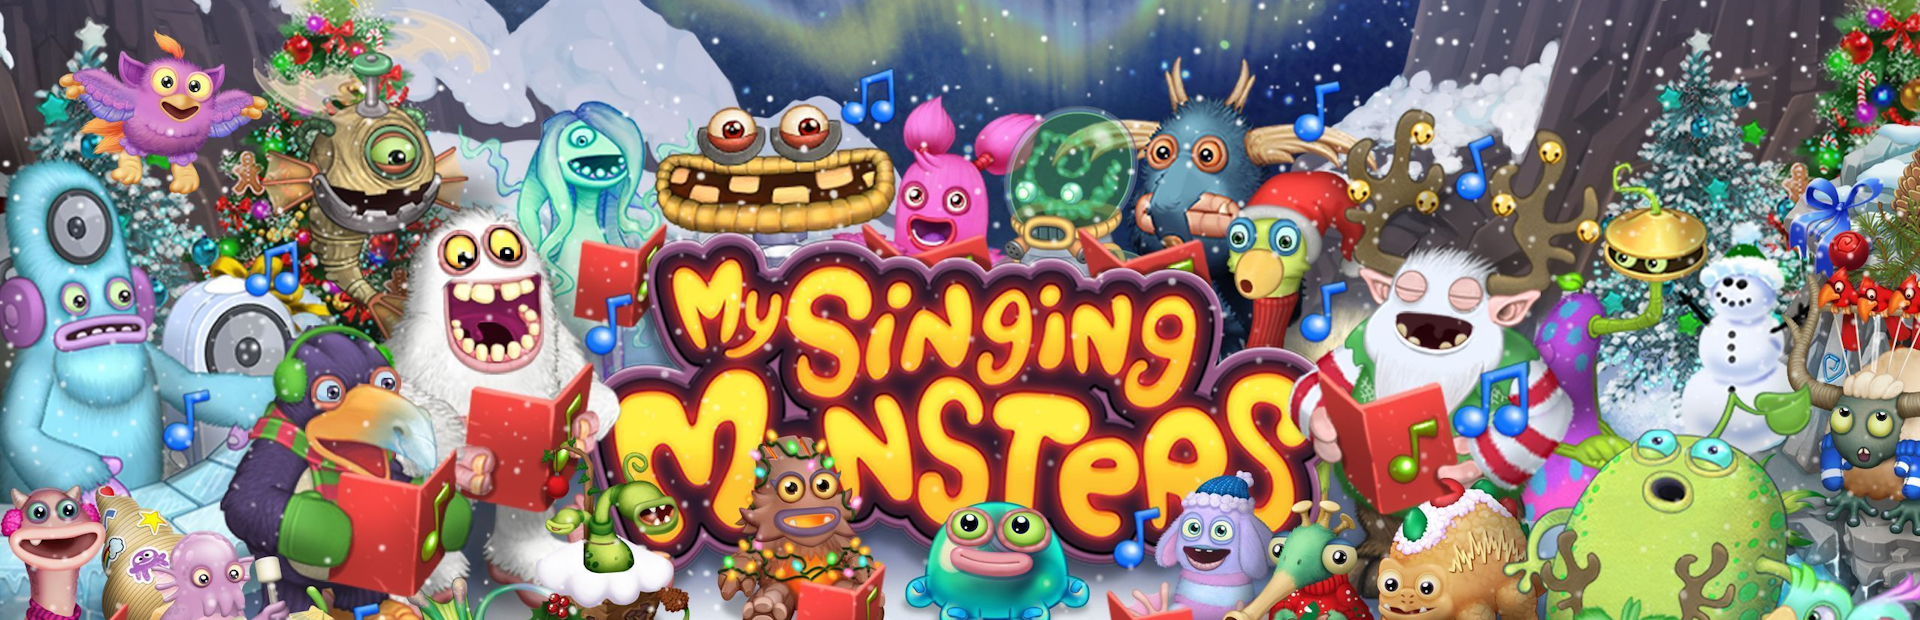 دانلود بازی My Singing Monsters Playground برای کامپیوتر | گیمباتو